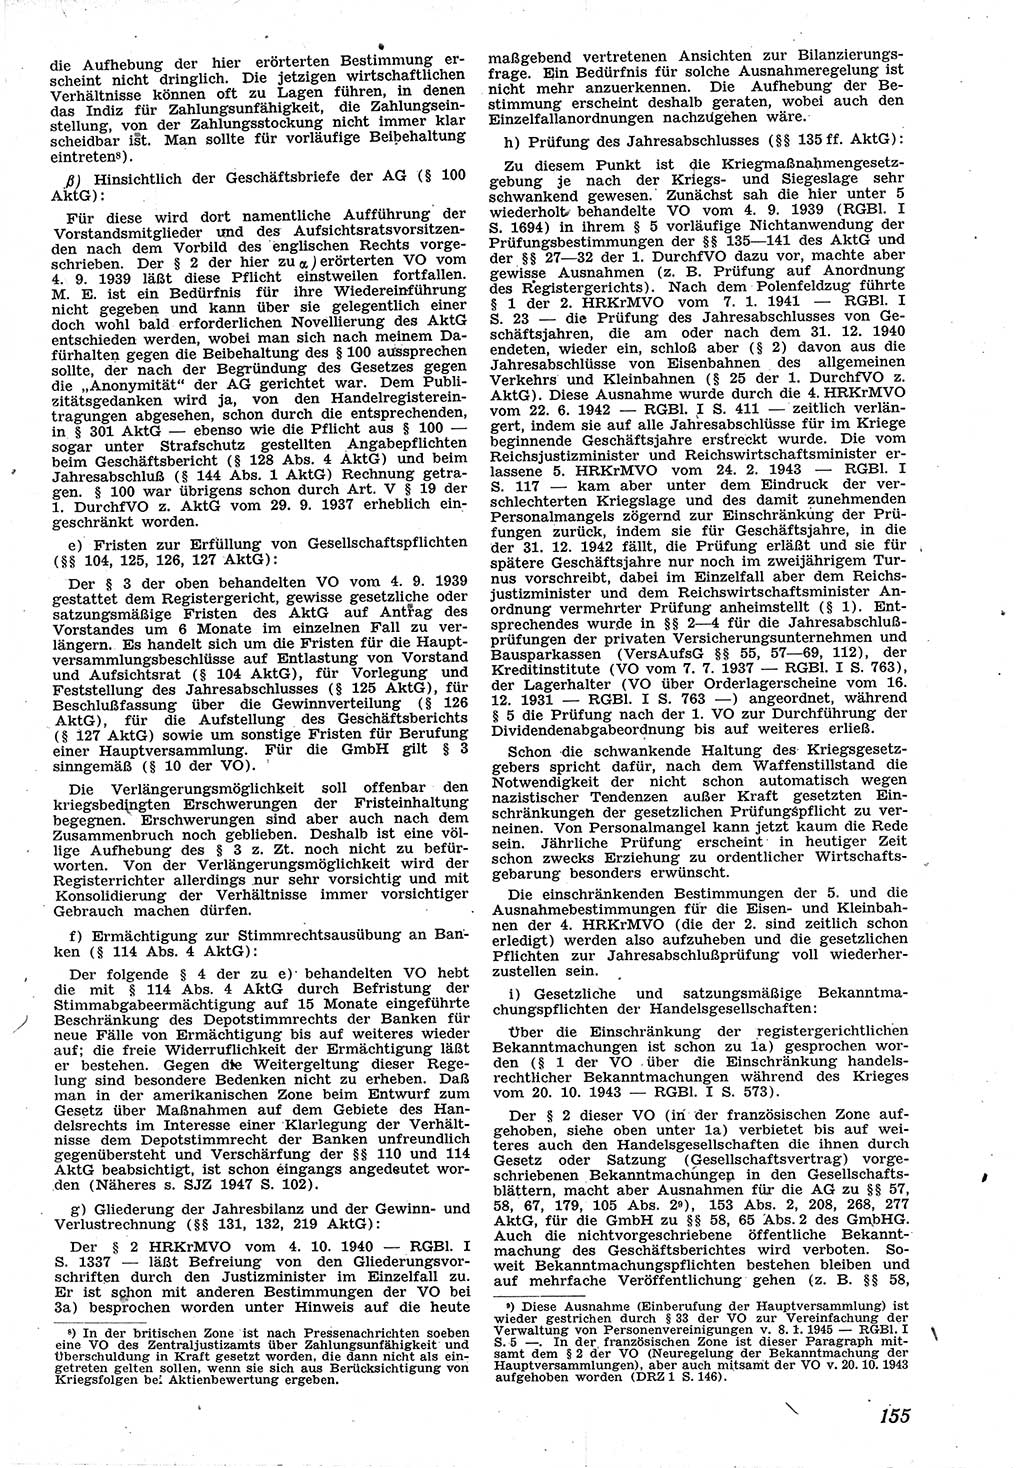 Neue Justiz (NJ), Zeitschrift für Recht und Rechtswissenschaft [Sowjetische Besatzungszone (SBZ) Deutschland], 1. Jahrgang 1947, Seite 155 (NJ SBZ Dtl. 1947, S. 155)